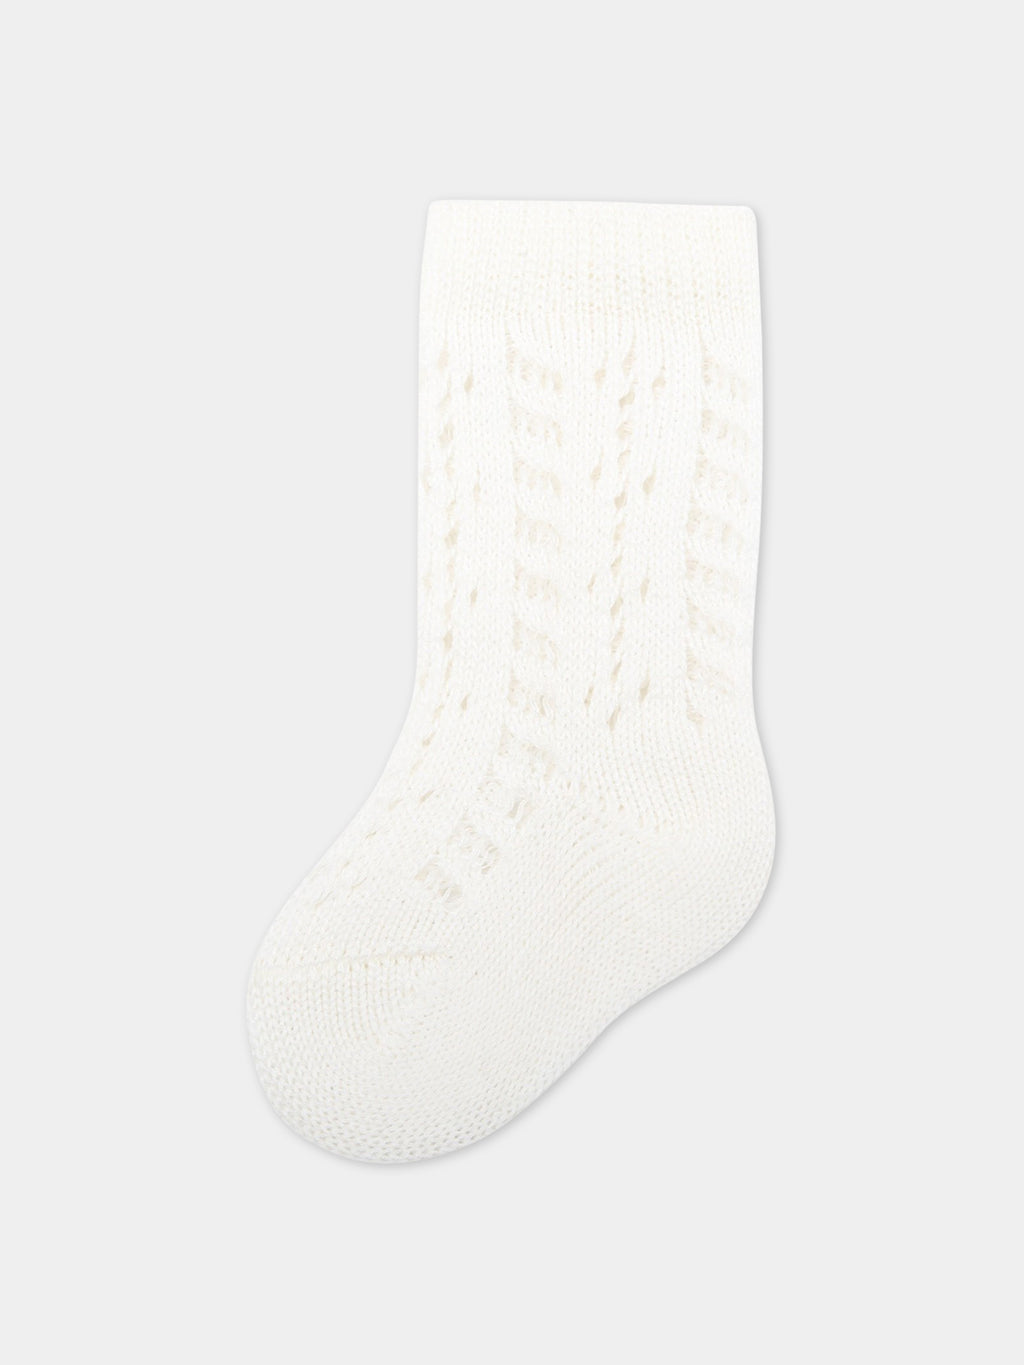 Ivory socks for ygirl